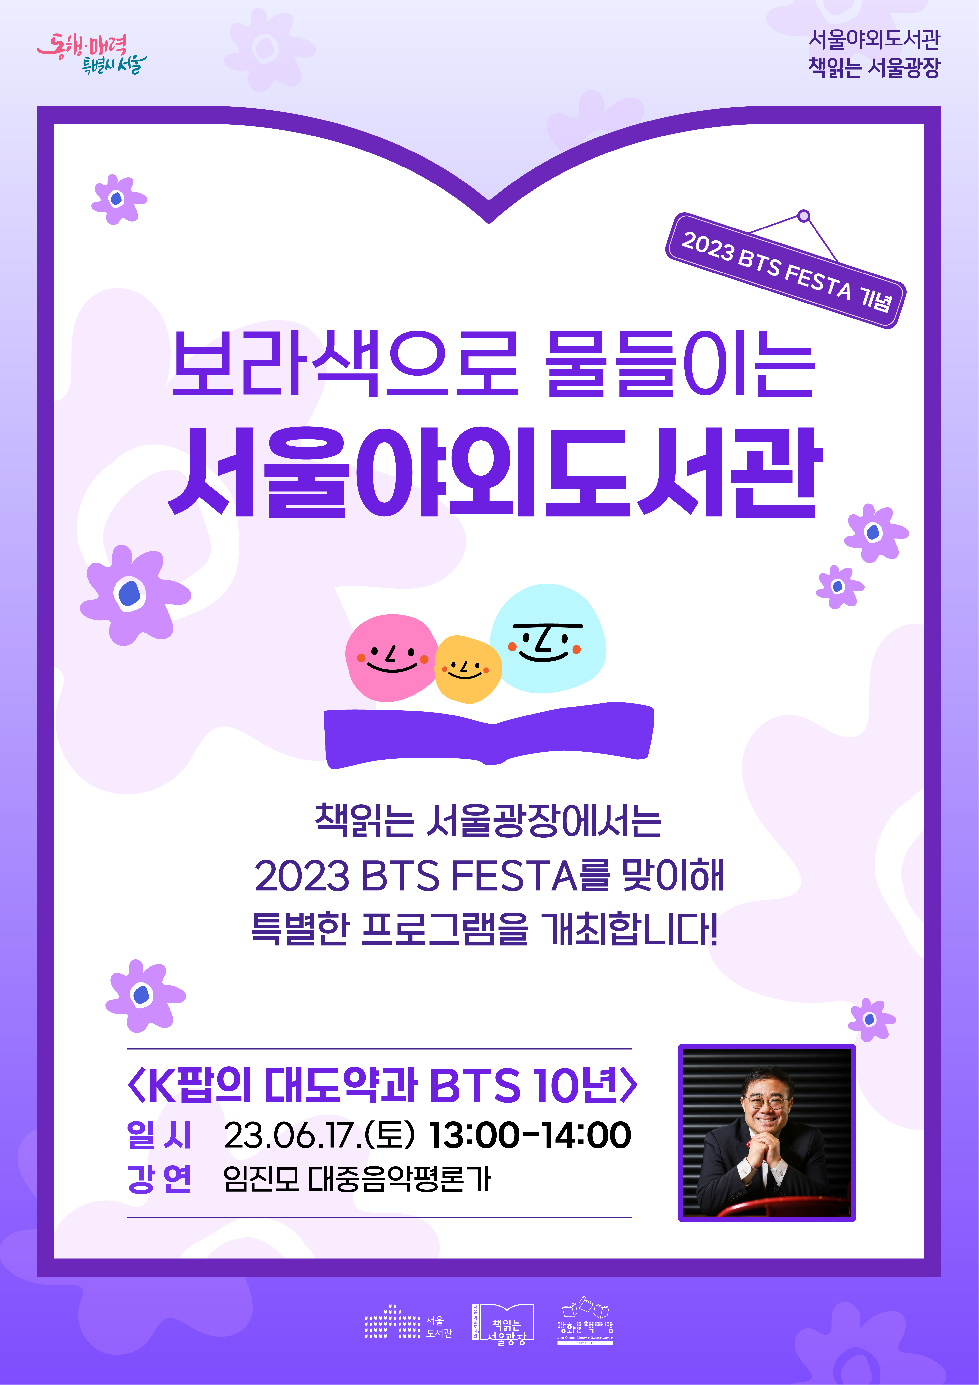 서울도서관, 2023 BTS FESTA 맞이 특별 프로그램 개최